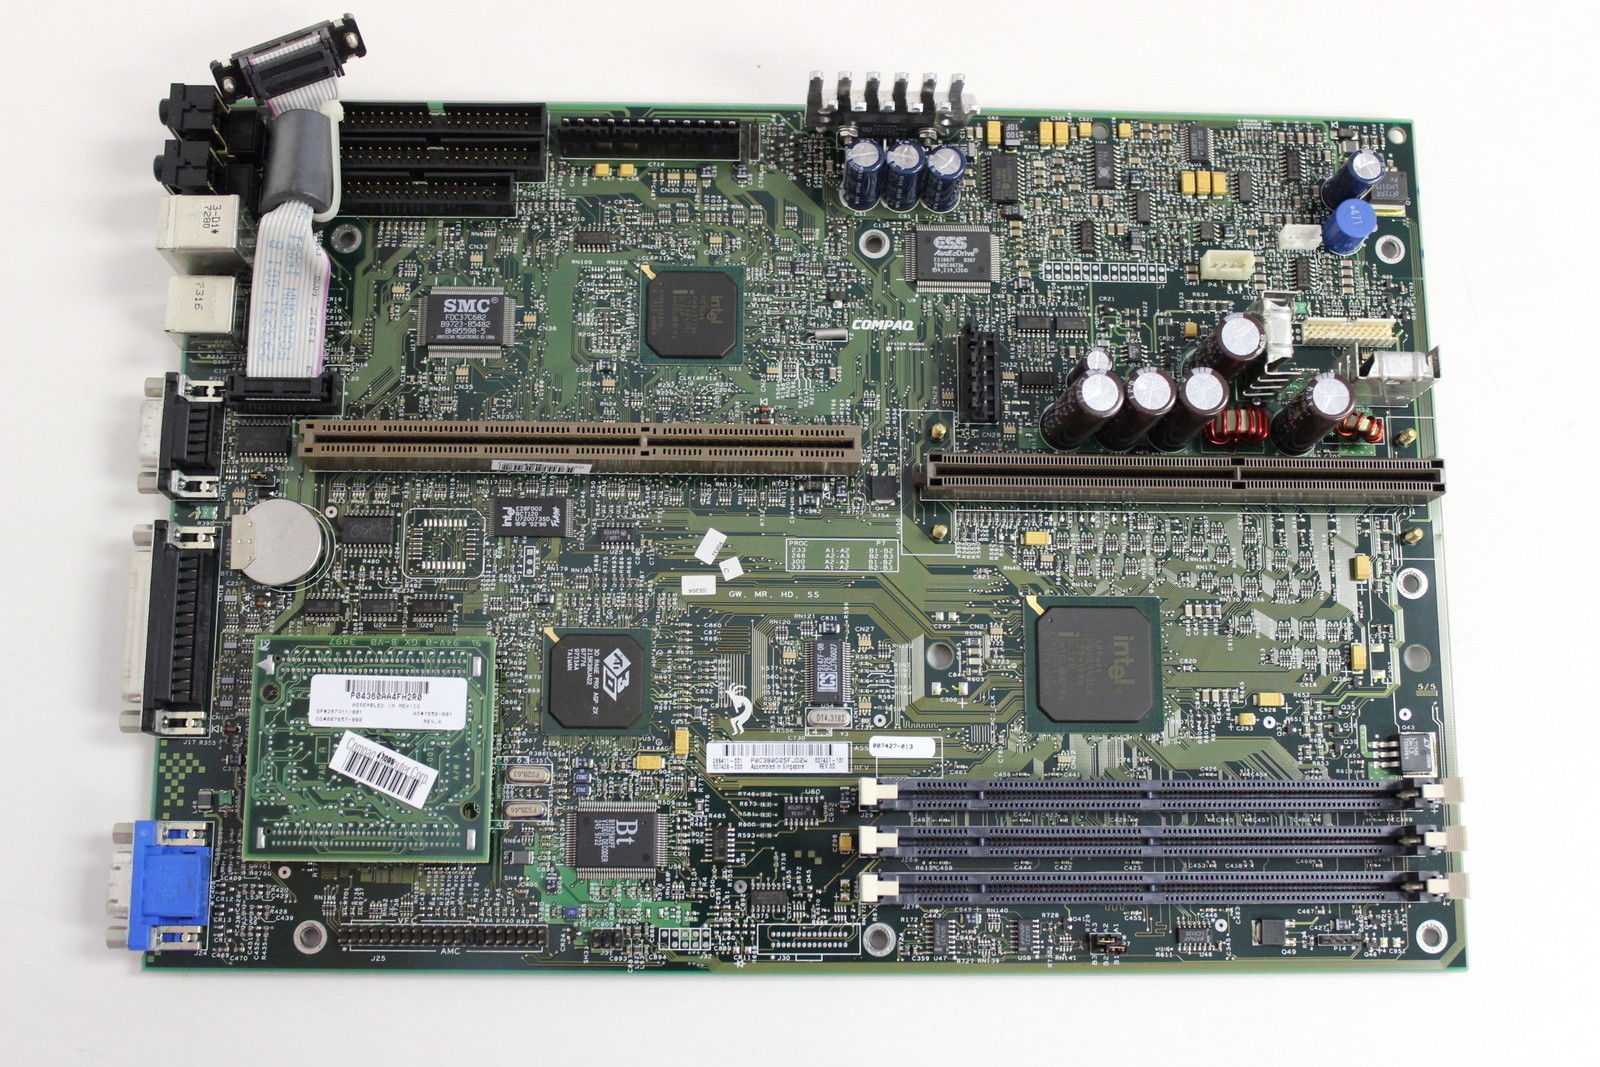 286411-001 Compaq Motherboard System Board 686 For Presario 4000/48